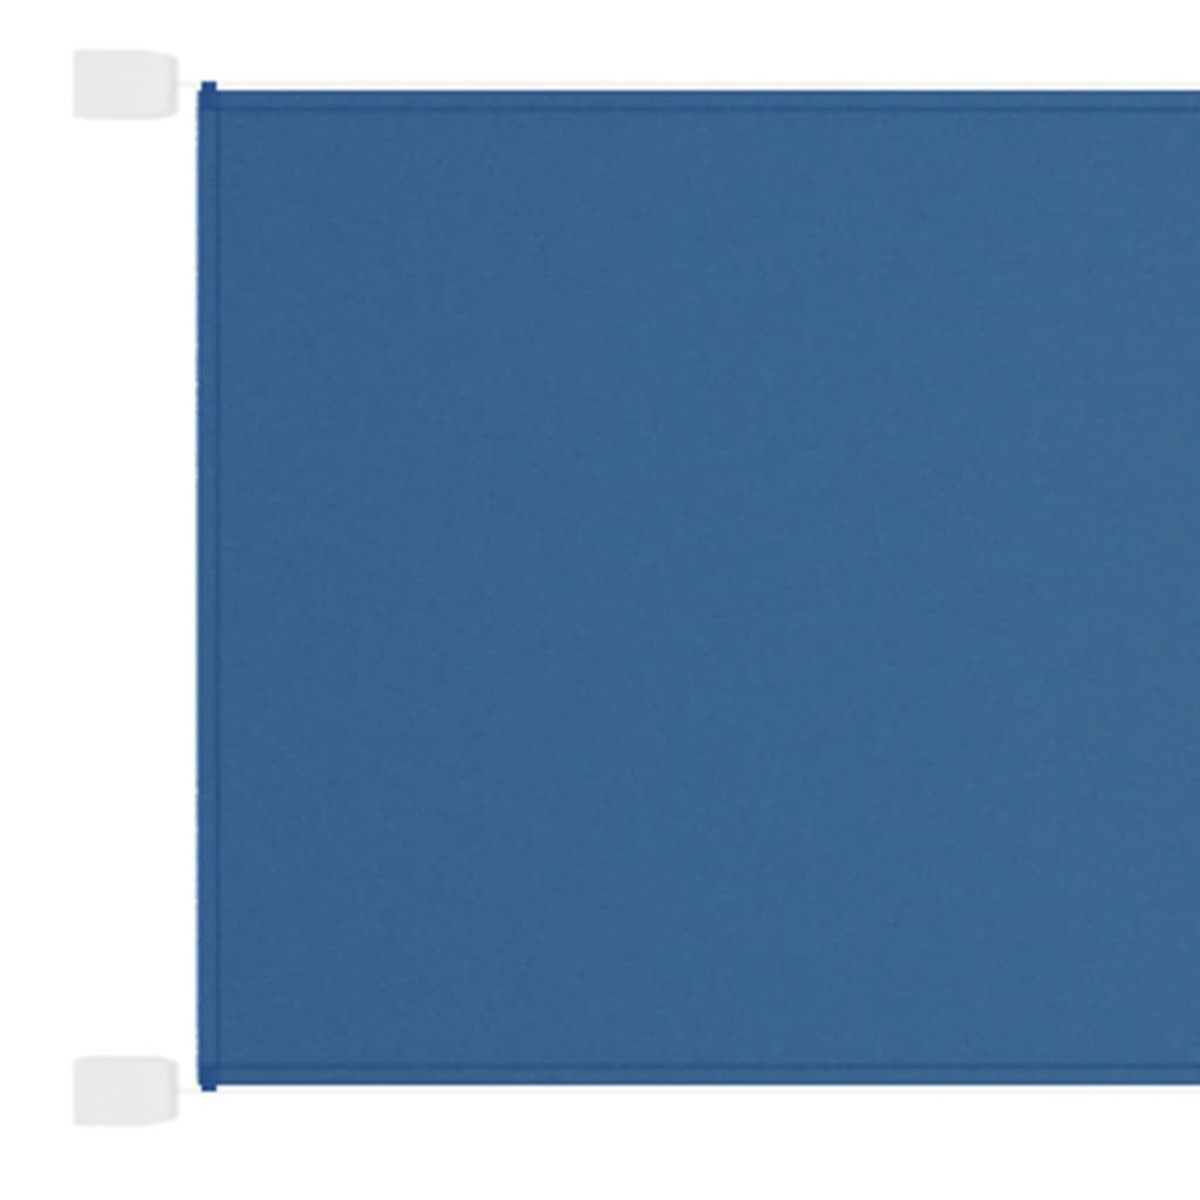 VIDAXL 148465 Sichtschutz, Blau